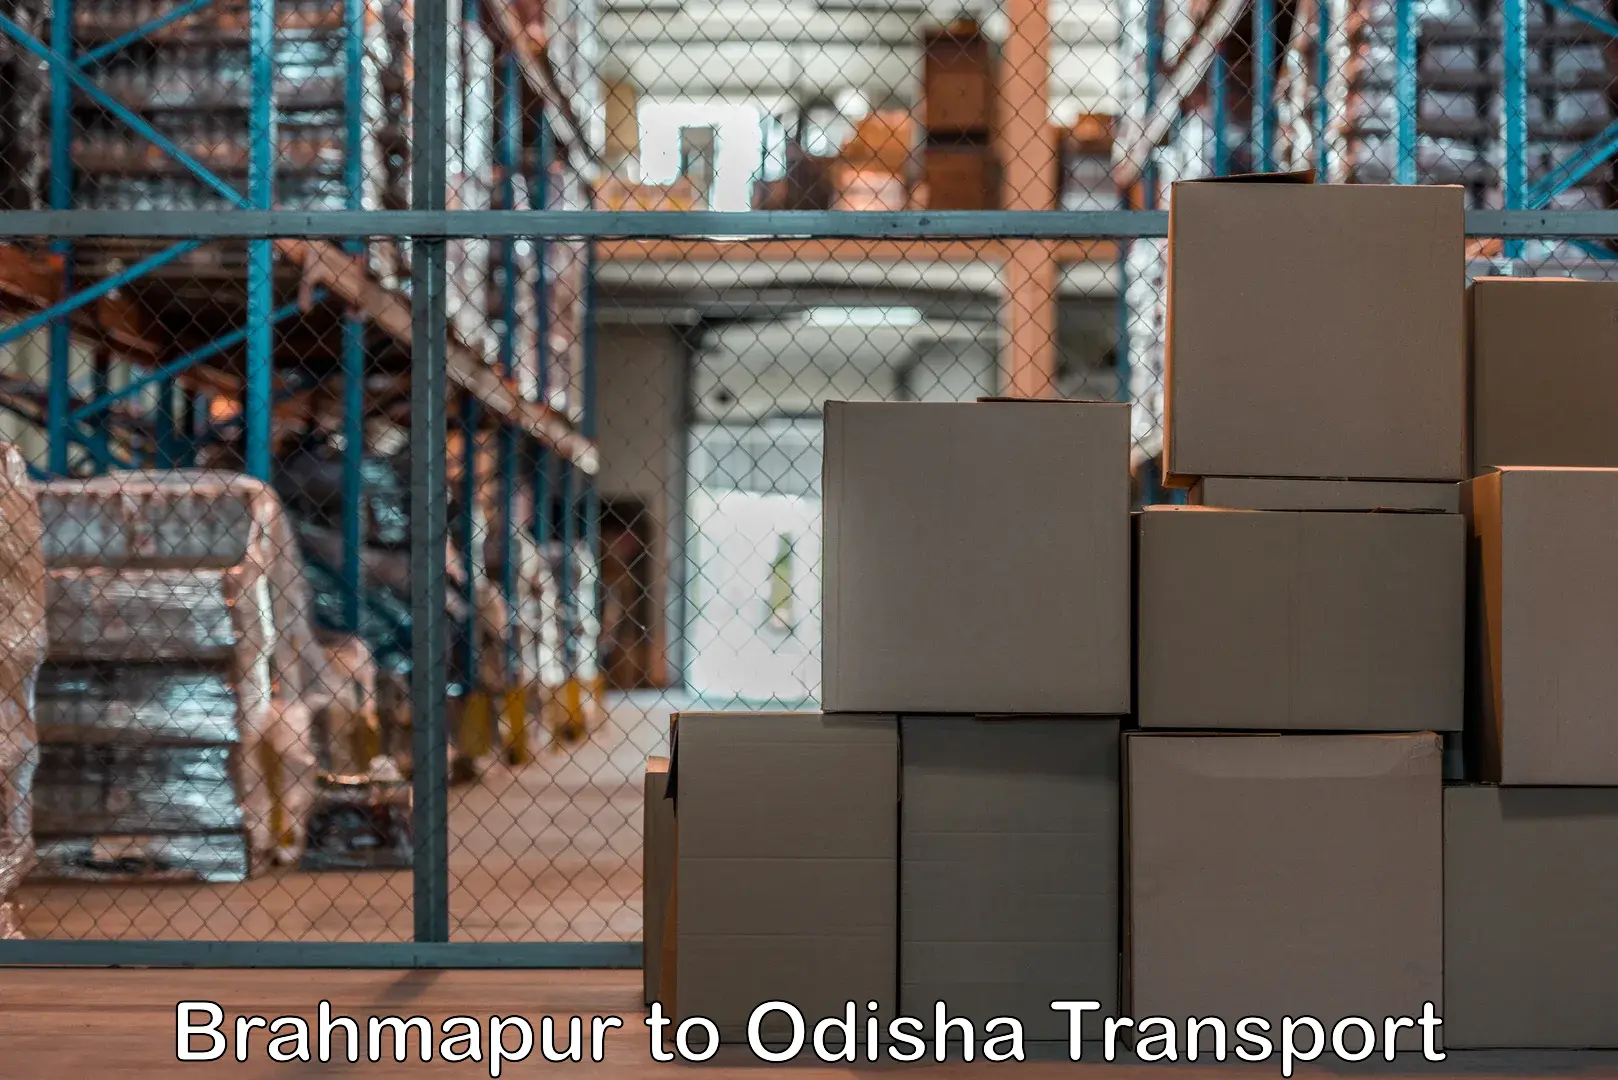 Cargo train transport services Brahmapur to Dukura